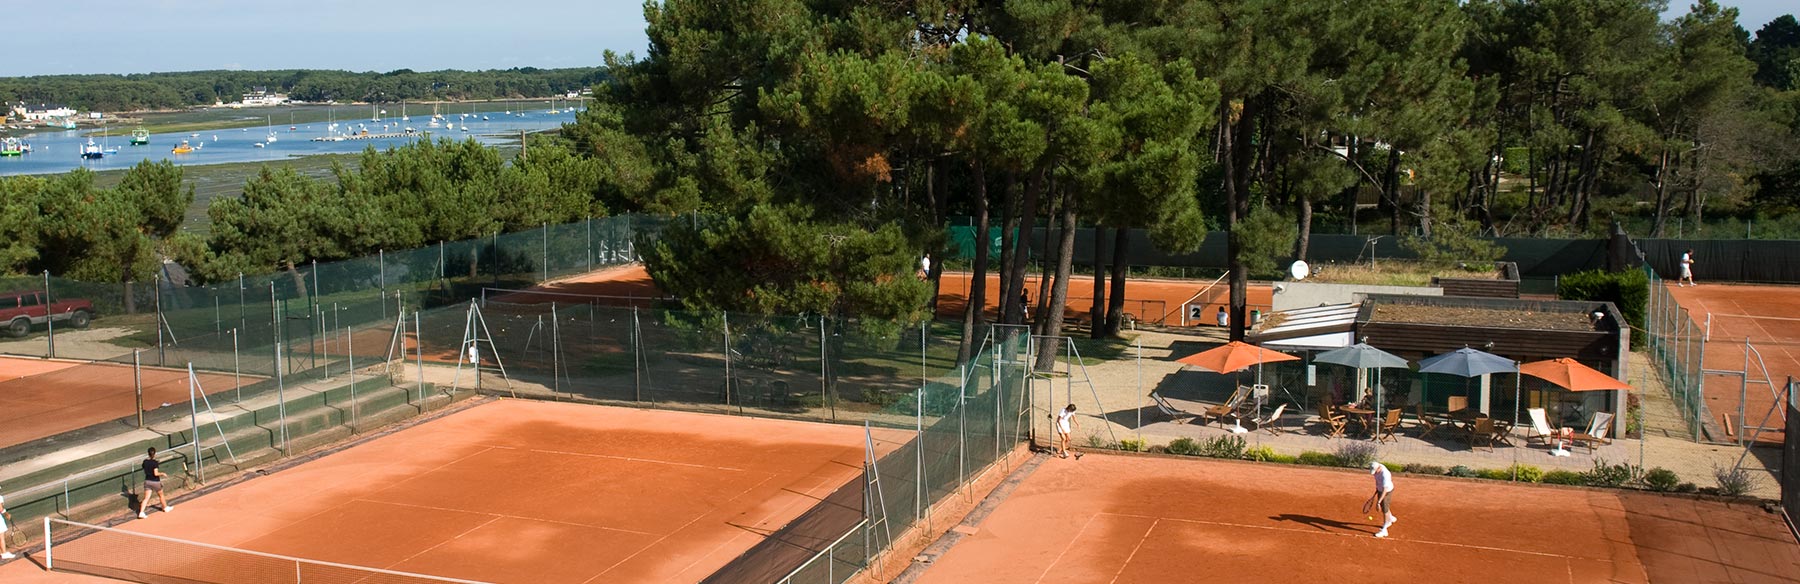 Le Club House du Tennis Club de Quehan avec vue sur courts.